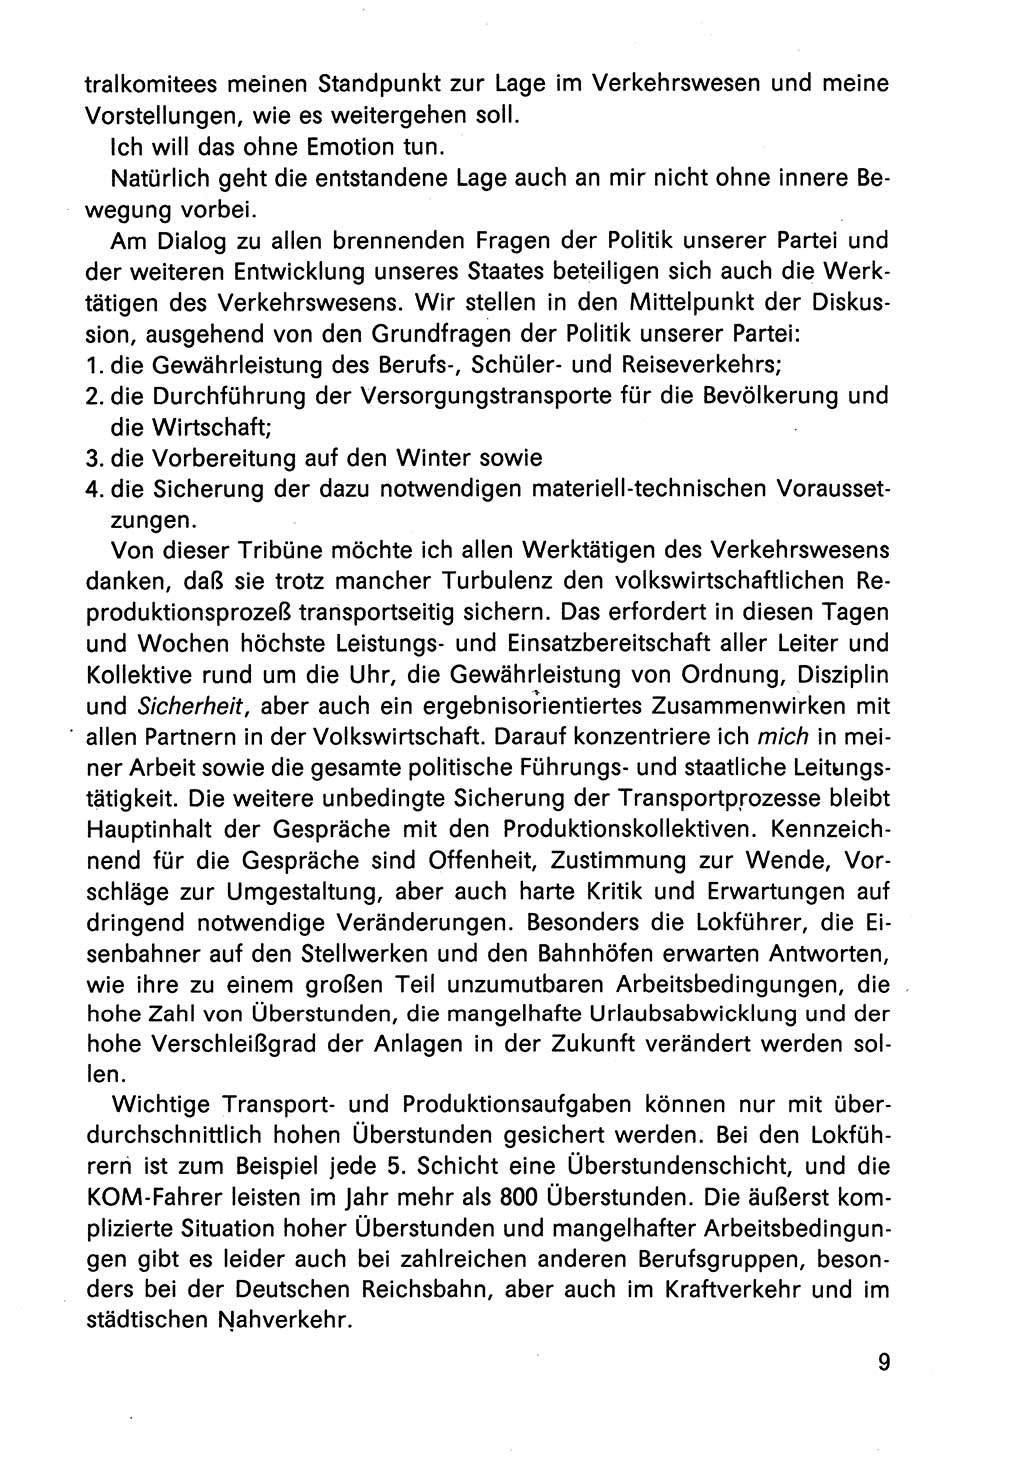 Diskussionsbeiträge, 10. Tagung des ZK (Zentralkomitee) der SED (Sozialistische Einheitspartei Deutschlands) [Deutsche Demokratische Republik (DDR)] 1989, Seite 9 (Disk.-Beitr. 10. Tg. ZK SED DDR 1989, S. 9)